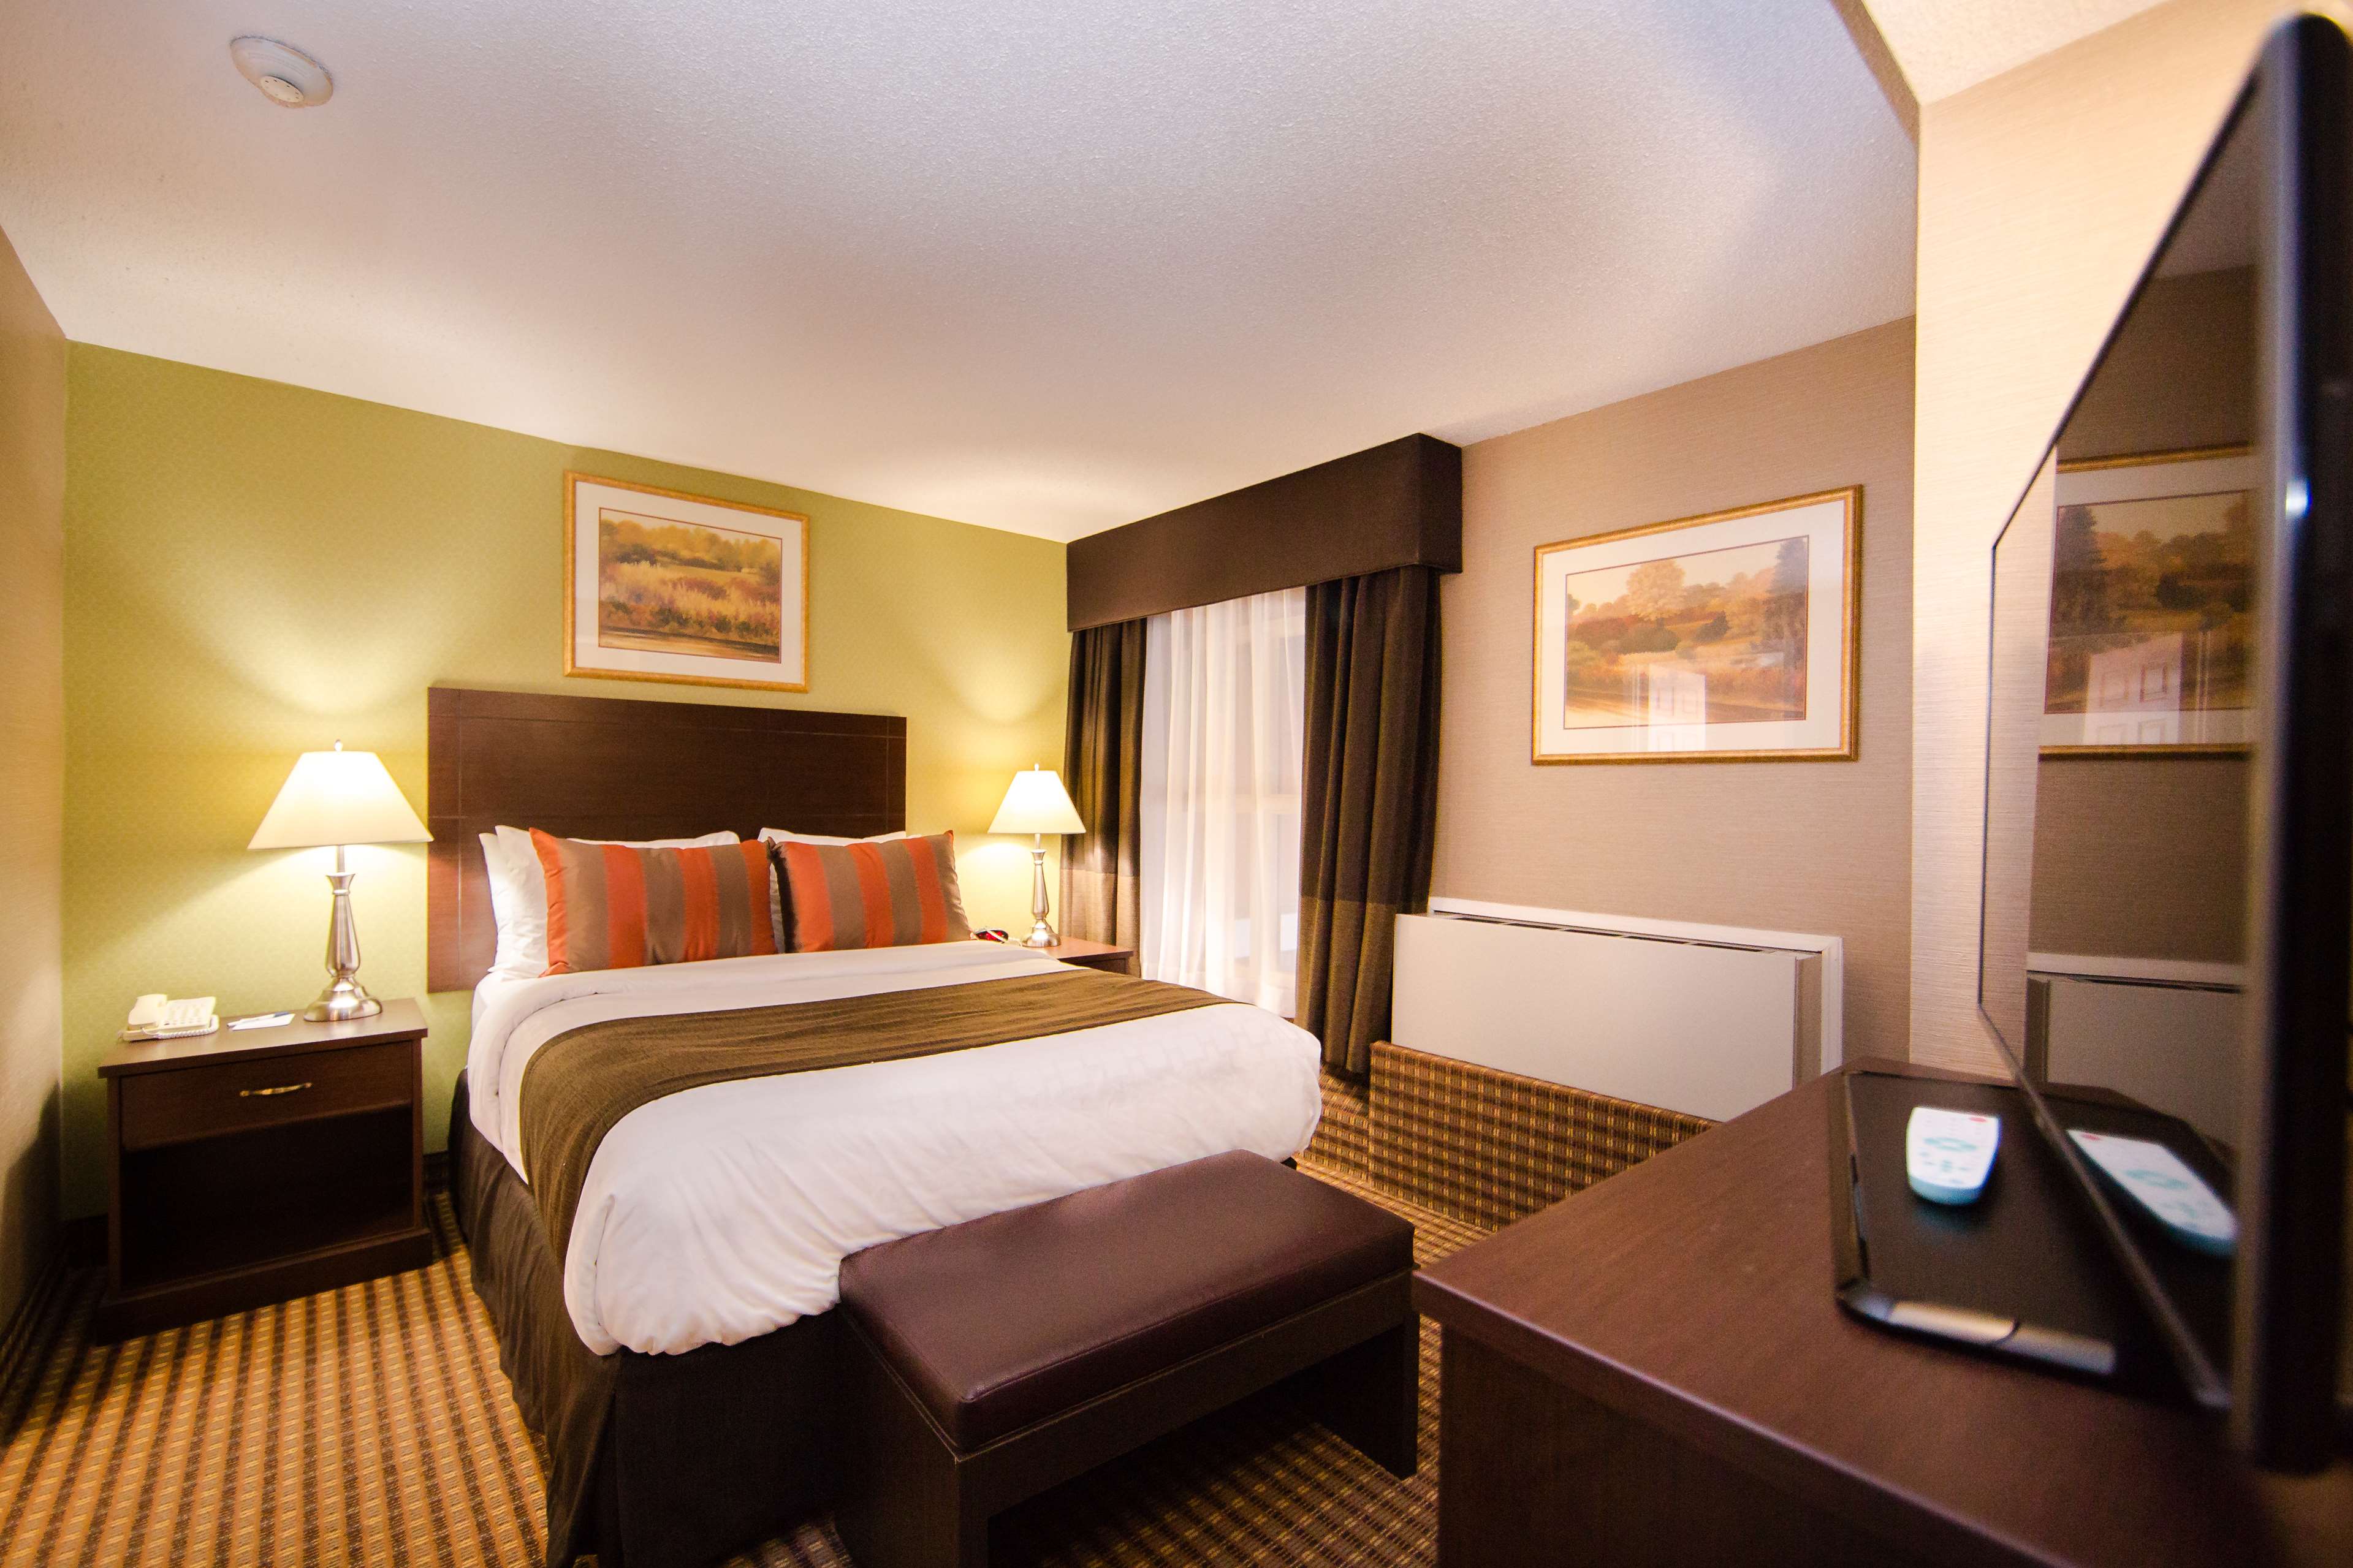 Queen Suite Best Western Plus Ottawa Kanata Hotel & Conference Centre Ottawa (613)828-2741